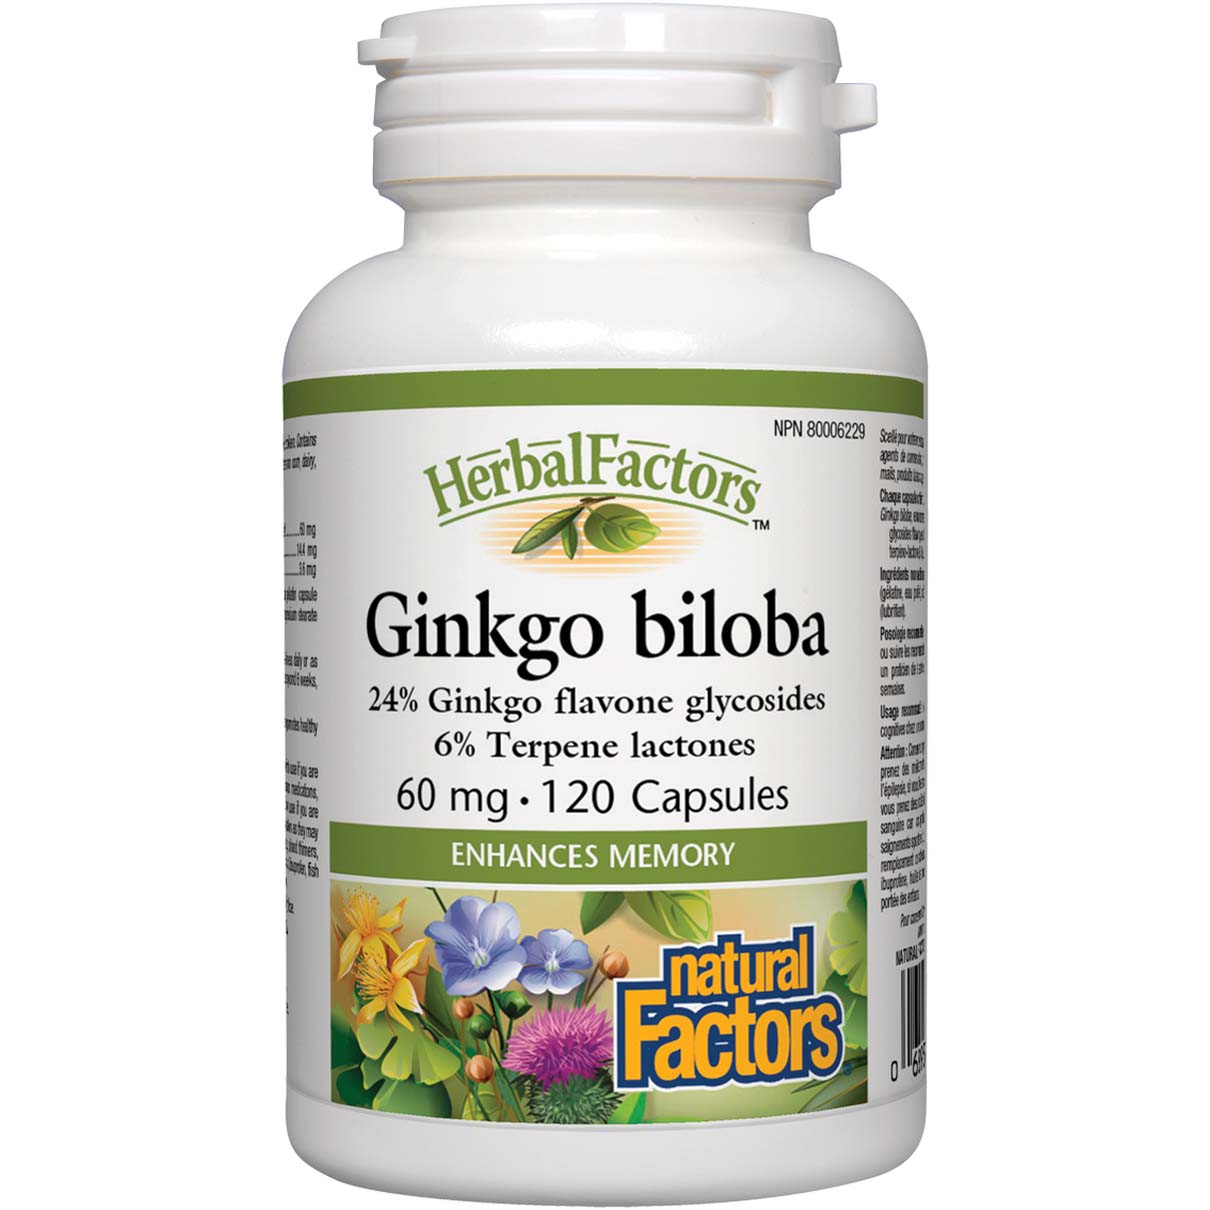 Natural Factors Ginkgo Biloba, 60 mg, 120 Capsules